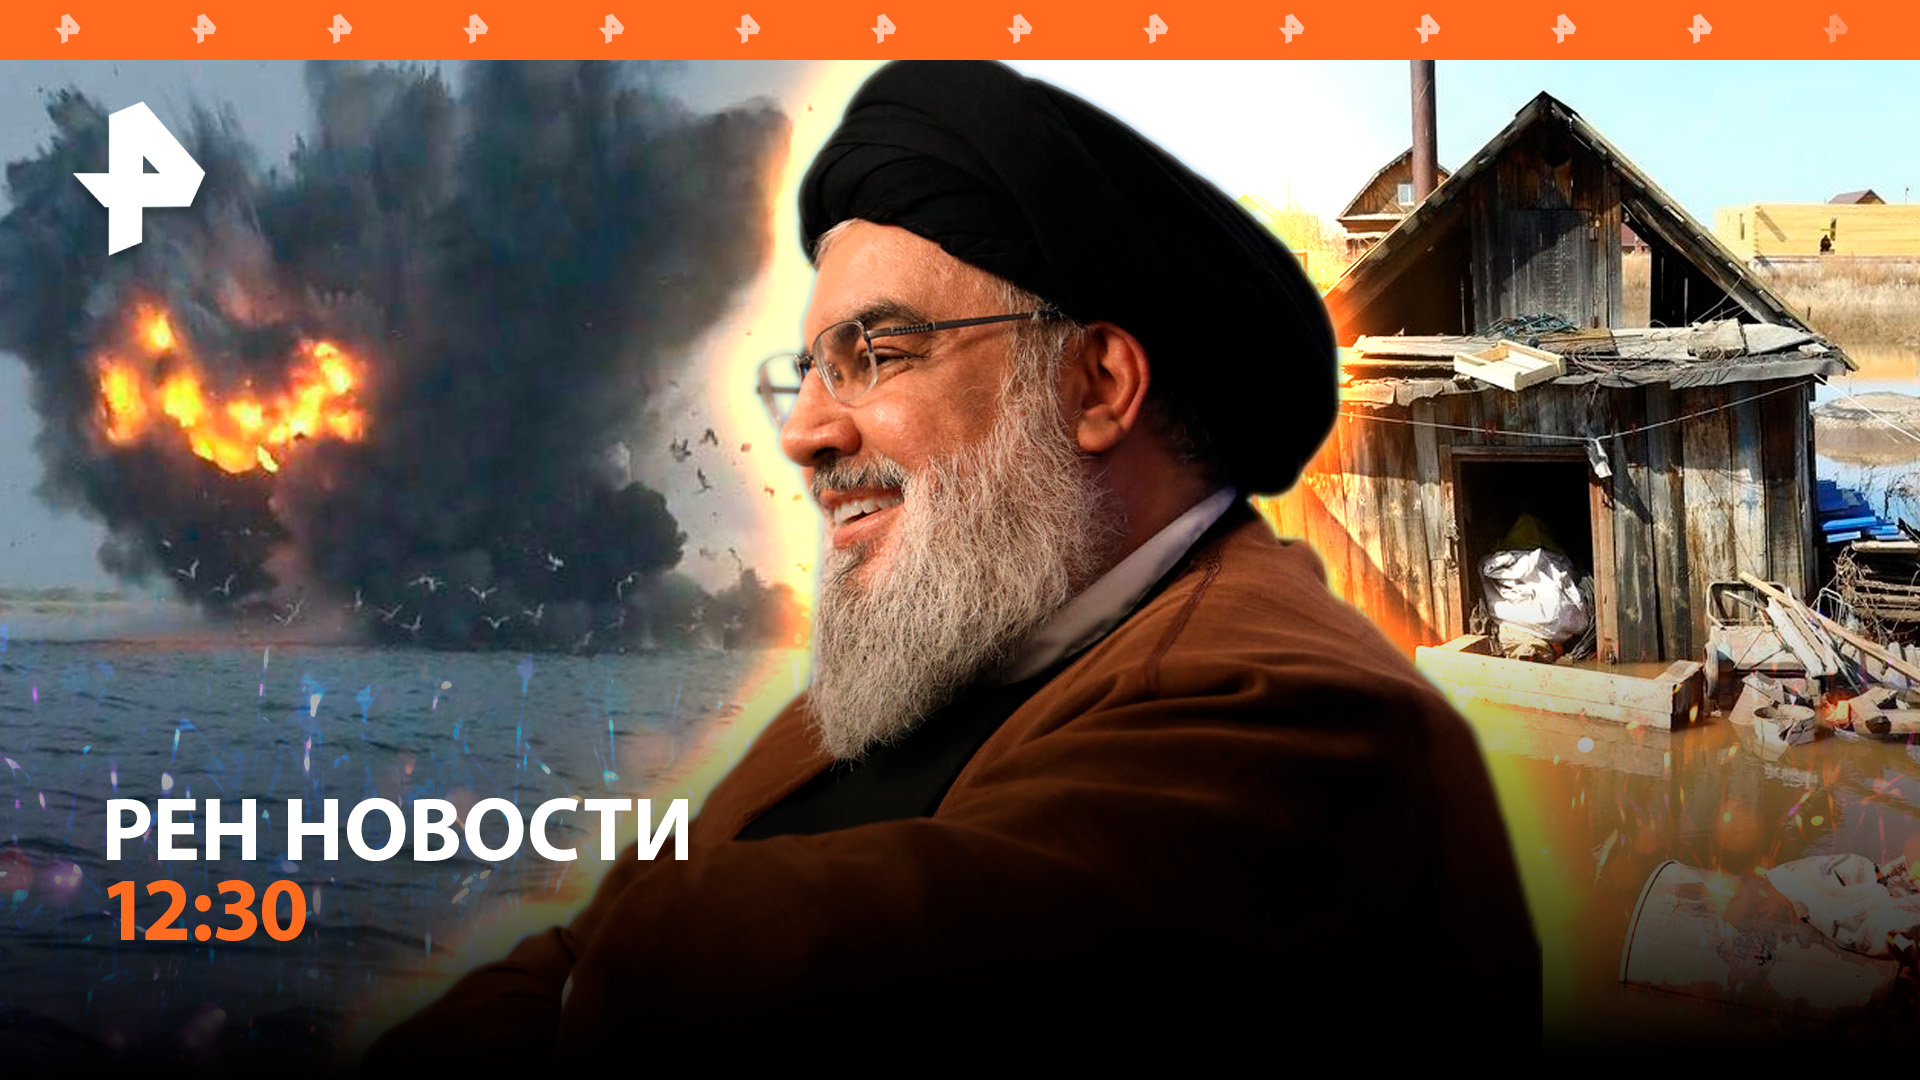 Хезболла грозит ударами по объектам в Израиле / Приморье тонет / РЕН Новости 23.06, 12:30